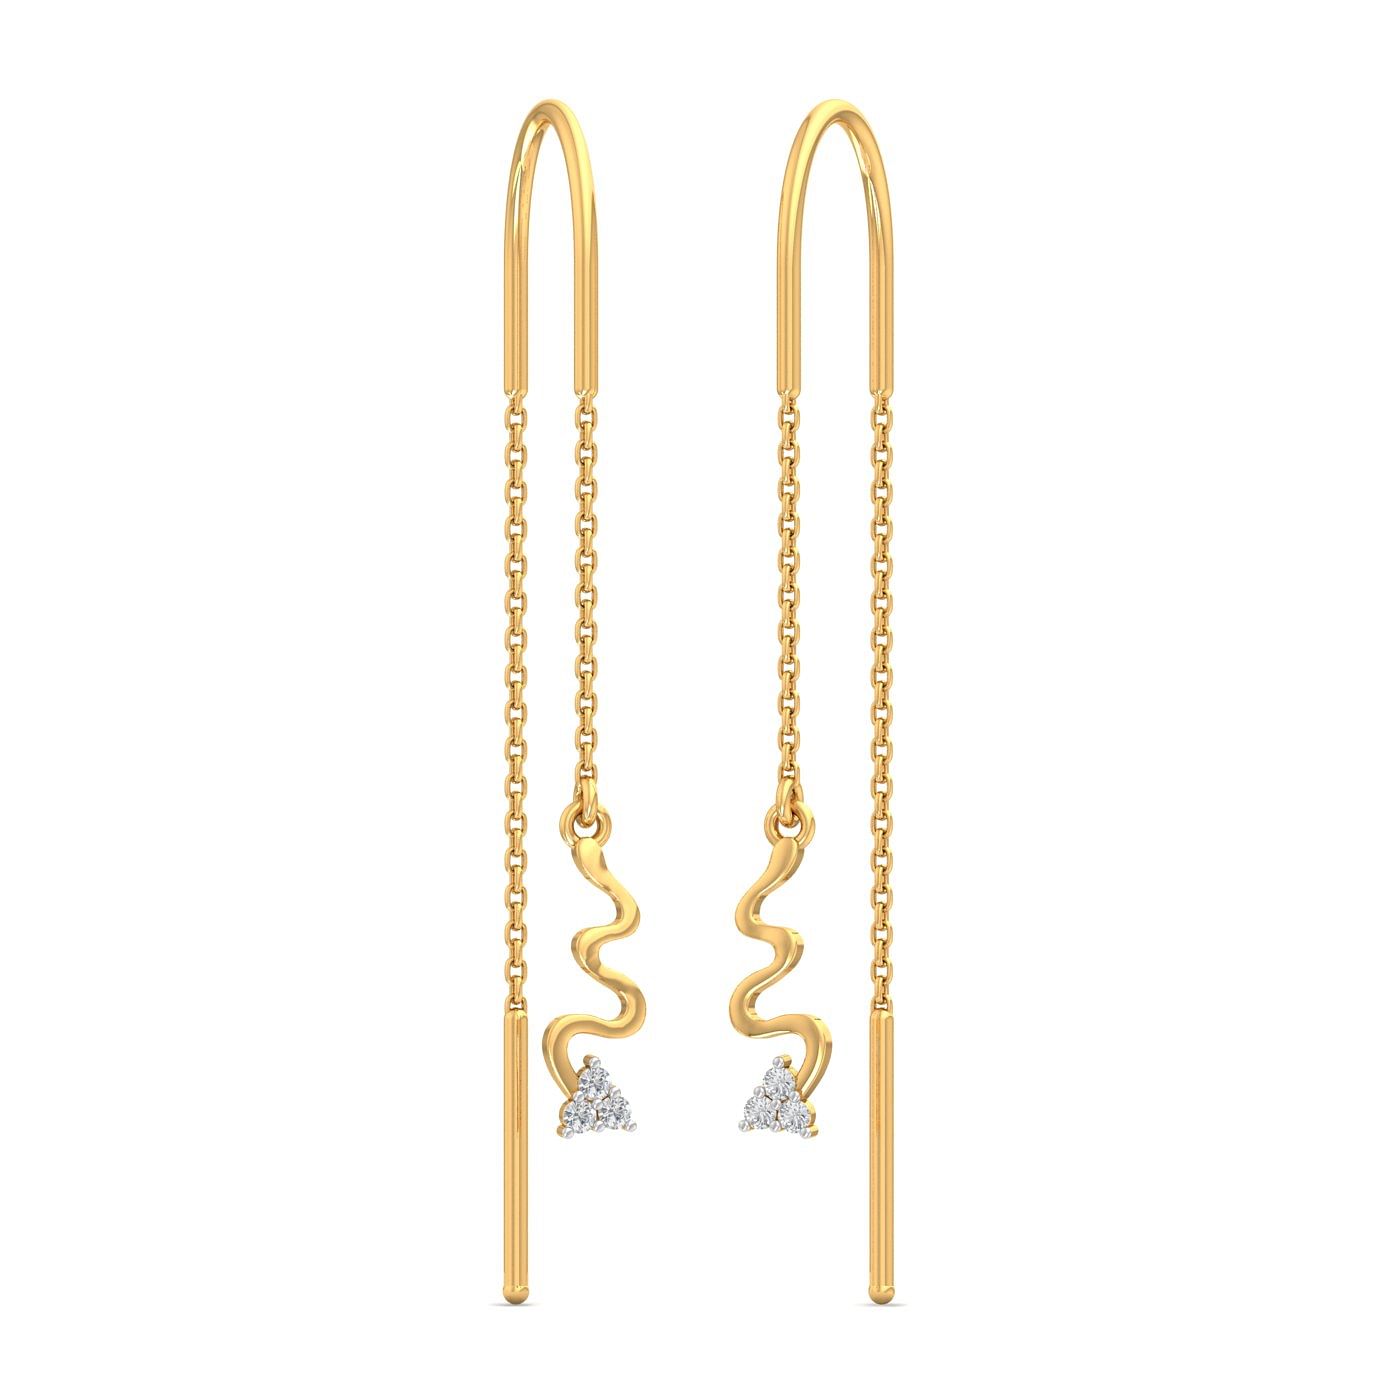 12 Sui dhage ideas  gold jewelry fashion gold earrings designs ear  jewelry